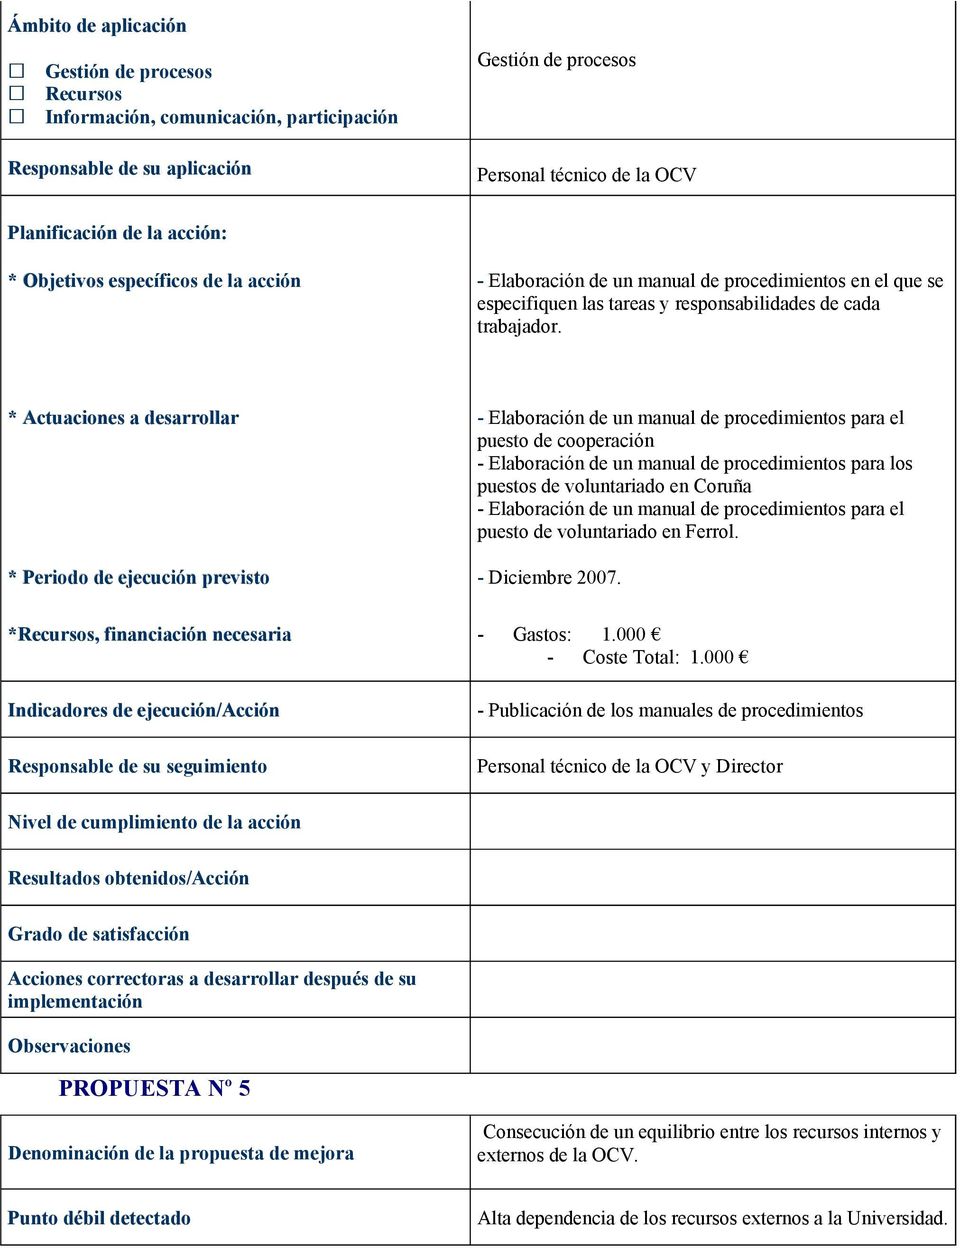 * Actuaciones a desarrollar - Elaboración de un manual de procedimientos para el puesto de cooperación - Elaboración de un manual de procedimientos para los puestos de voluntariado en Coruña -